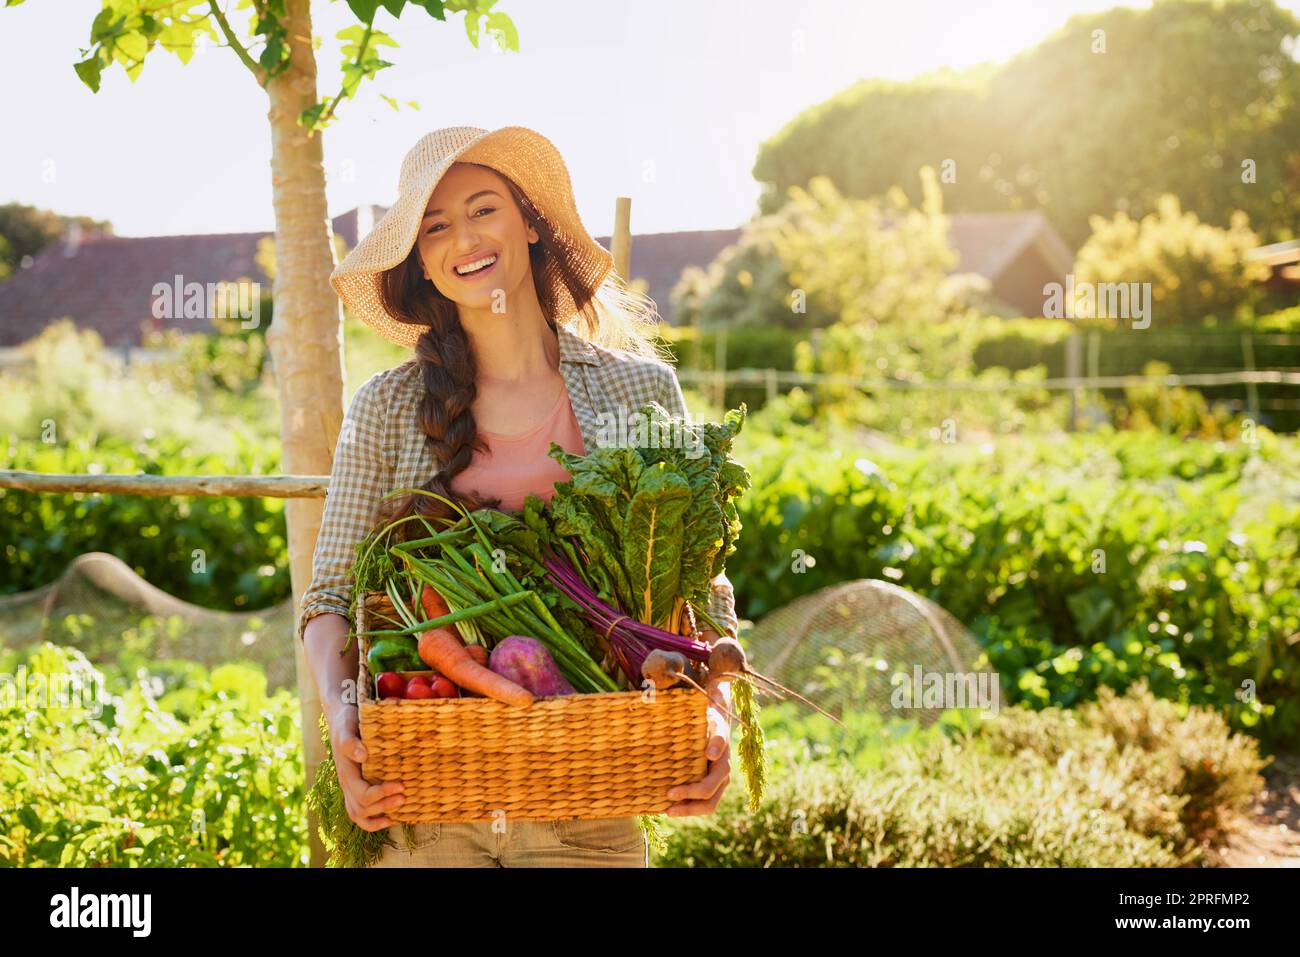 Von Mutter Natur selbst gewachsen. Porträt einer jungen Frau, die einen Korb mit frisch gepflückten Produkten in einem Garten trägt. Stockfoto